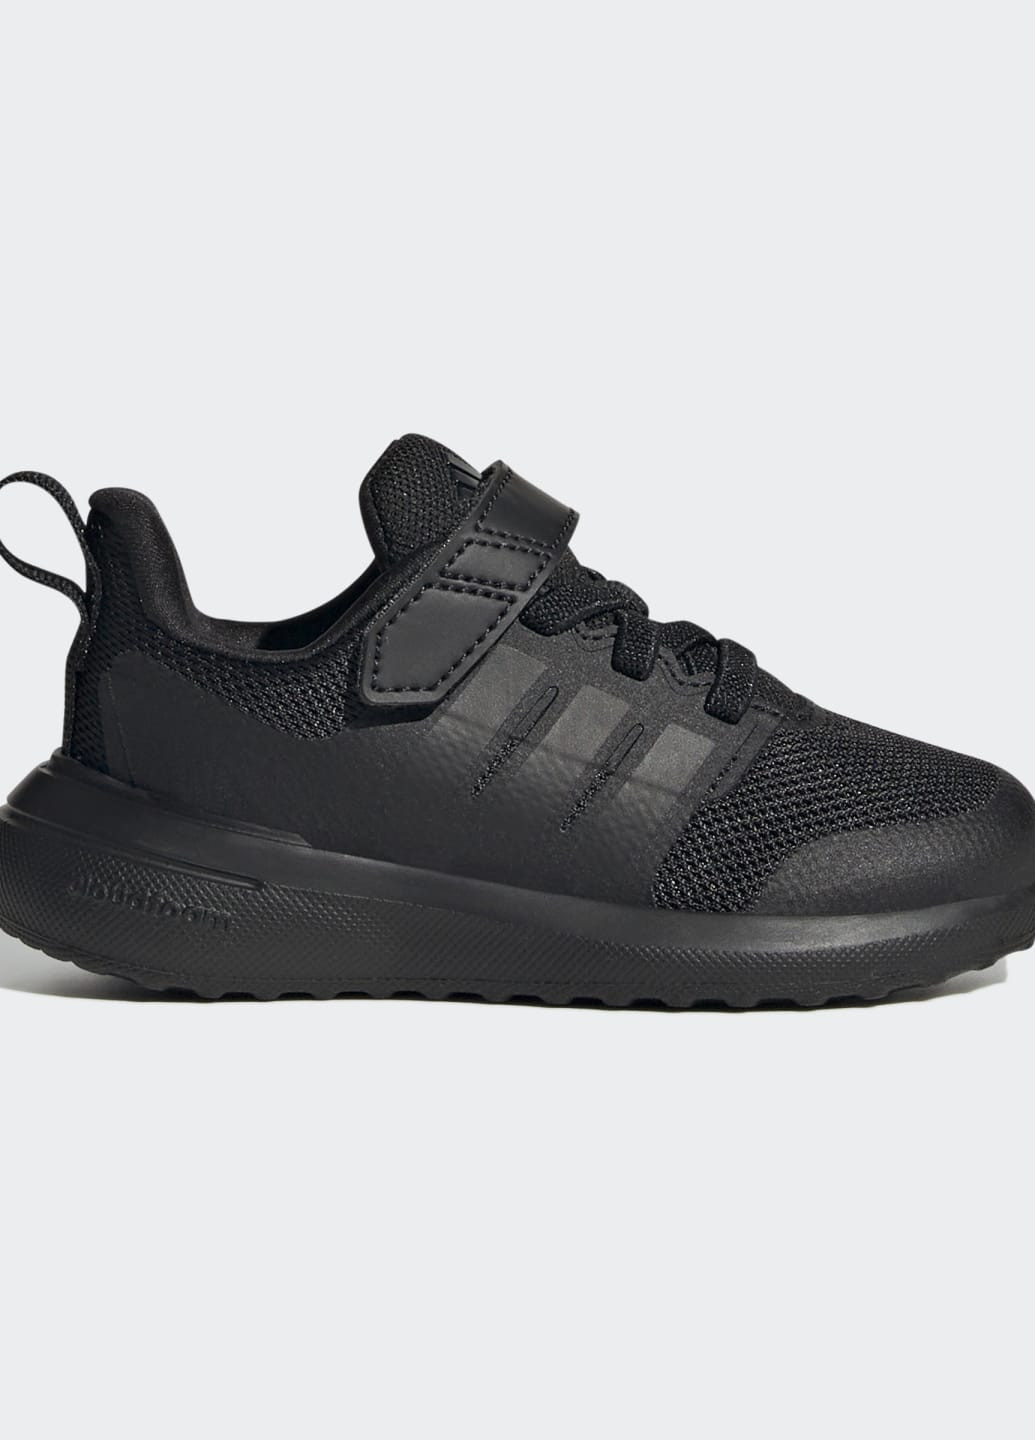 Черные всесезонные кроссовки fortarun 2.0 cloudfoam adidas